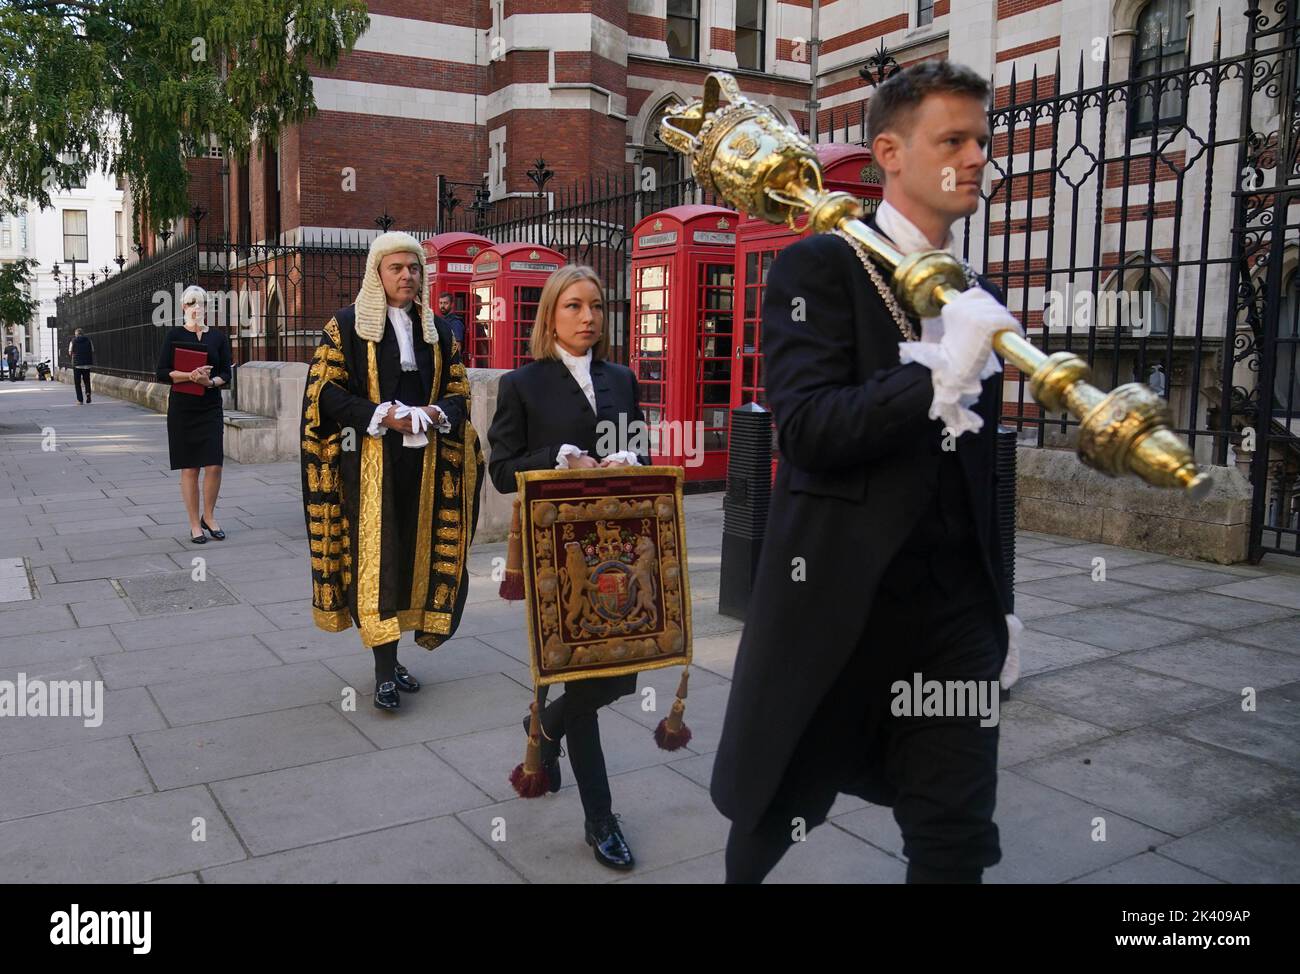 Il Segretario alla Giustizia Brandon Lewis (al centro a sinistra) arriva alla Royal Courts of Justice, nel centro di Londra, prima della sua cerimonia di giuramento come Lord Chancellor. Data immagine: Giovedì 29 settembre 2022. Foto Stock